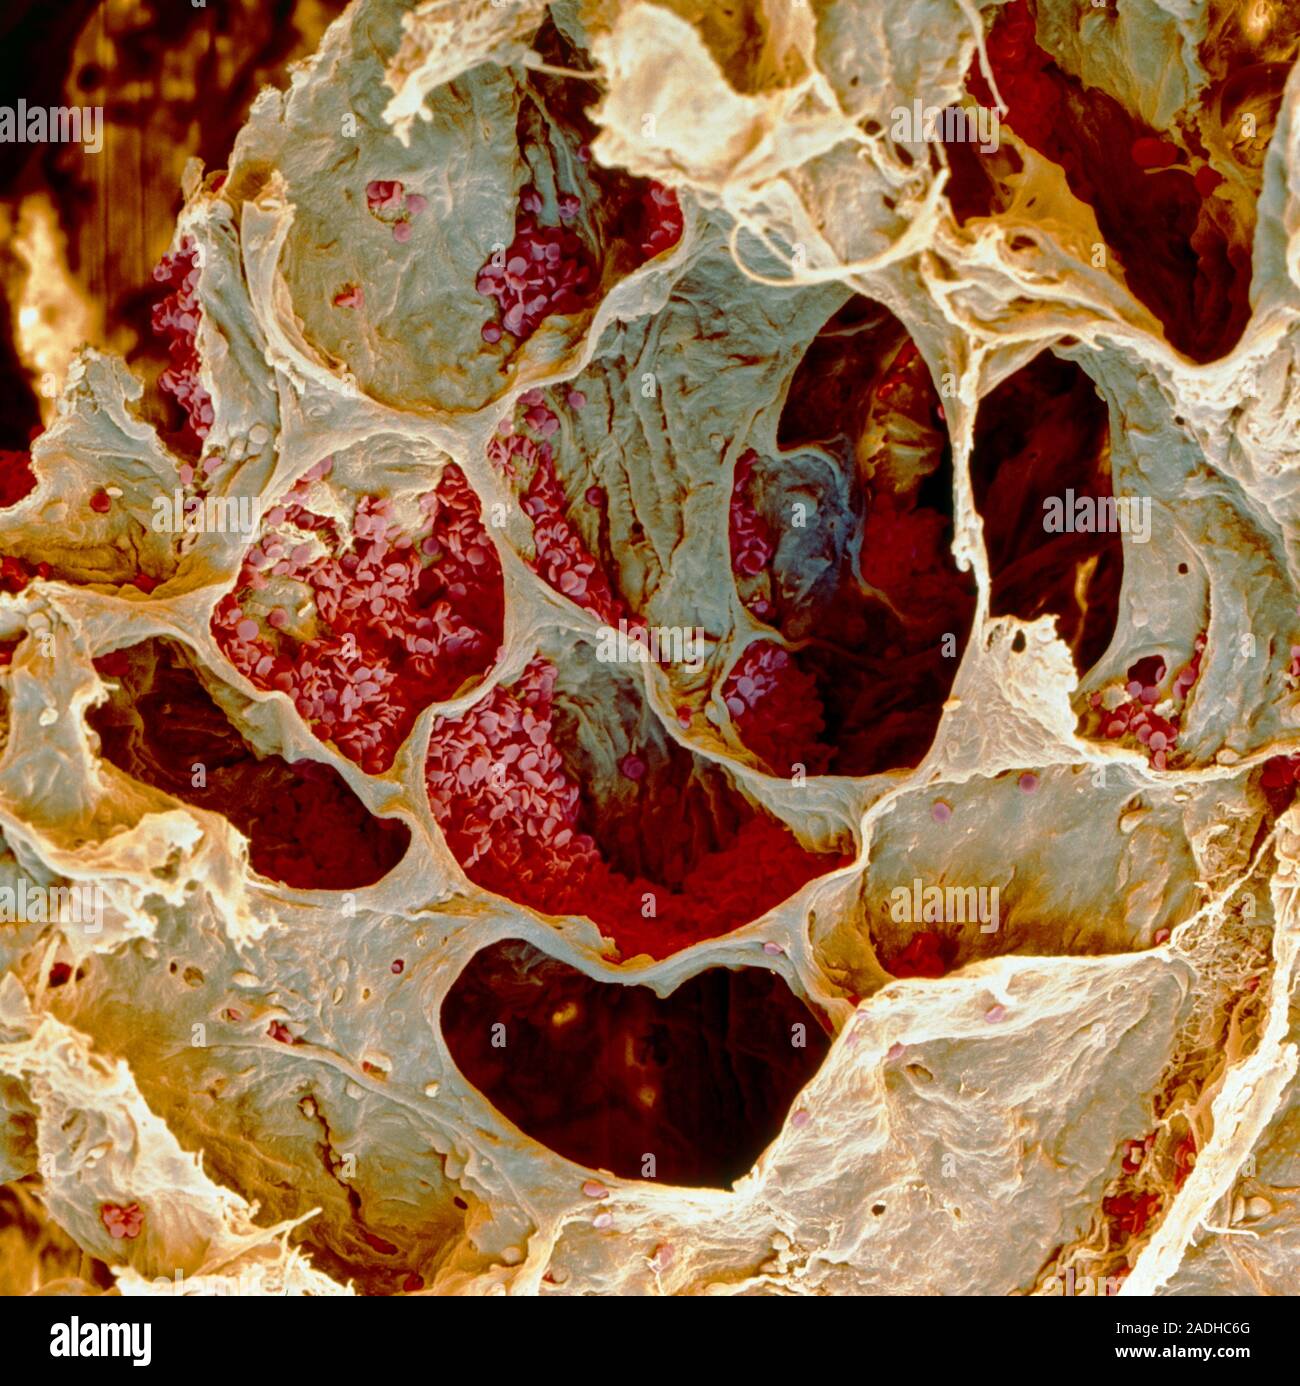 Почему кровь желтая. Кровь курильщика под микроскопом. Лёгкие курильщика под микроскопом.